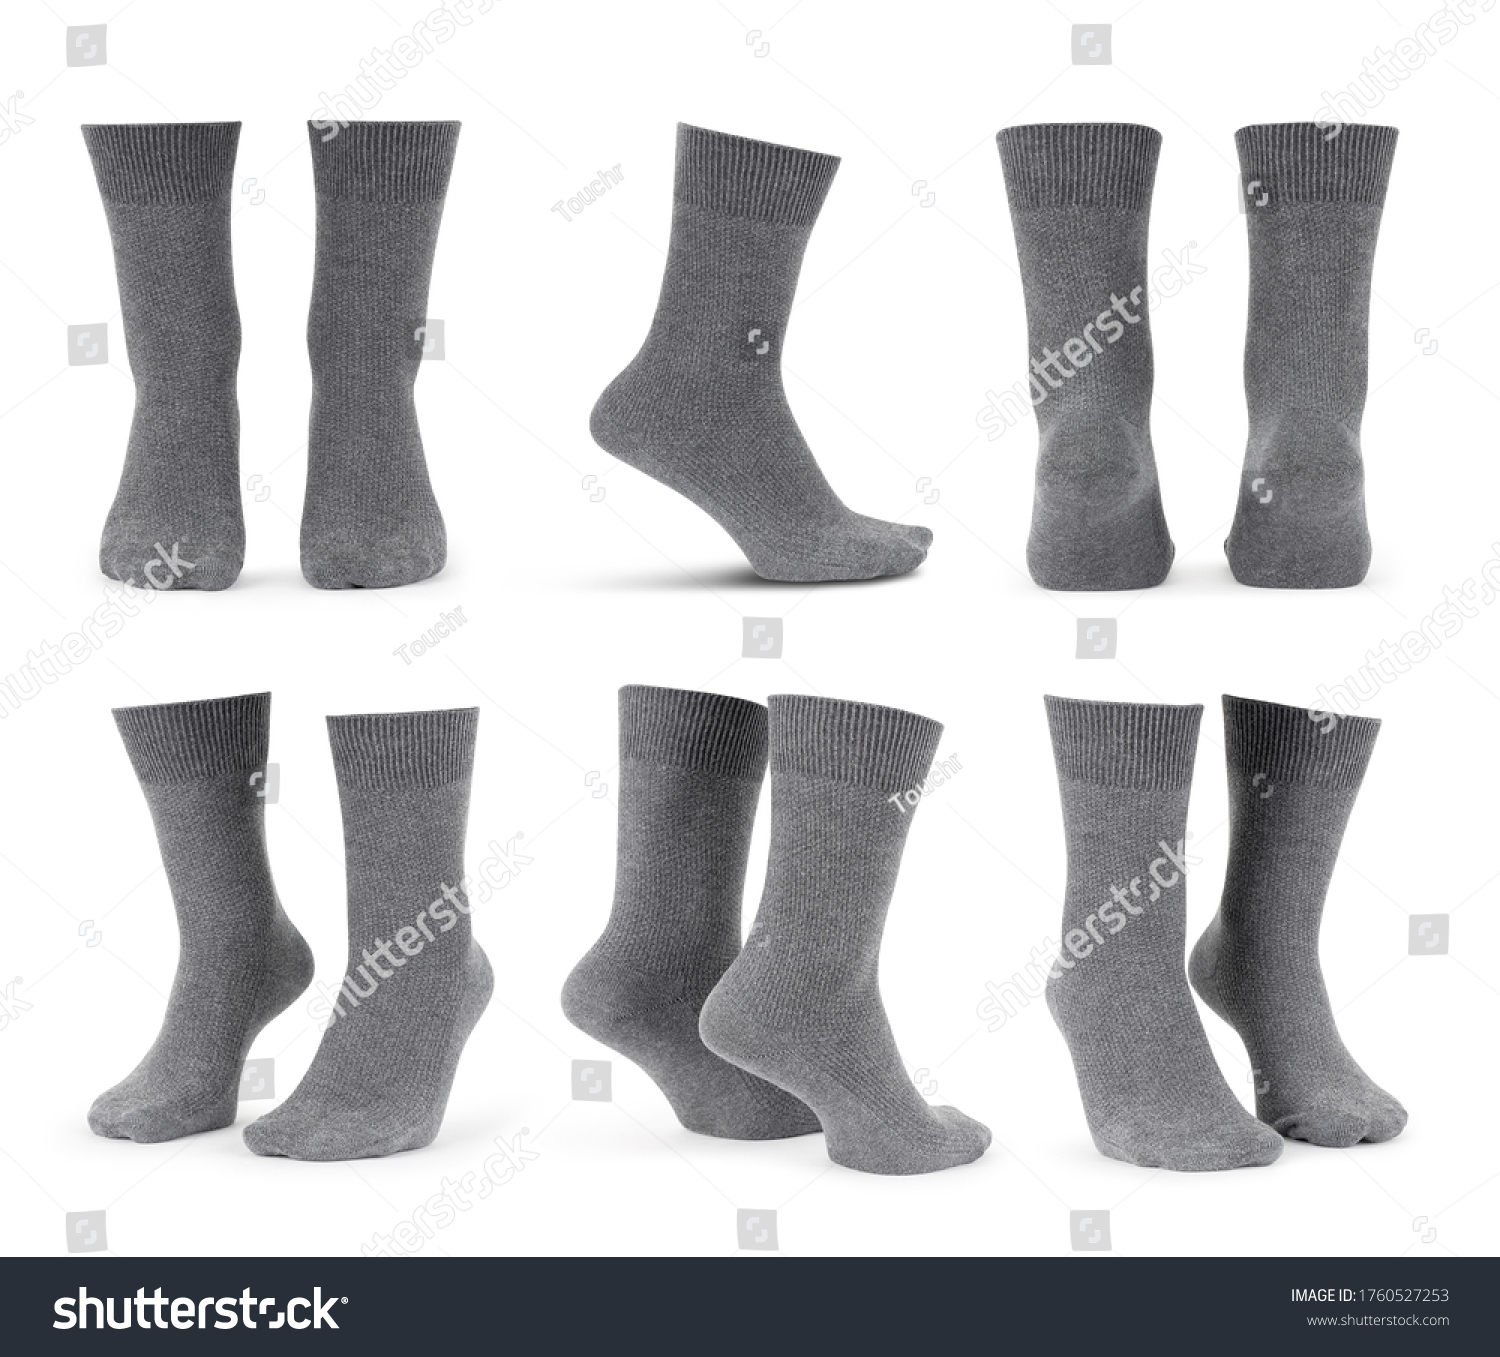 Grey socks Images, Stock Photos & Vectors | Shutterstock